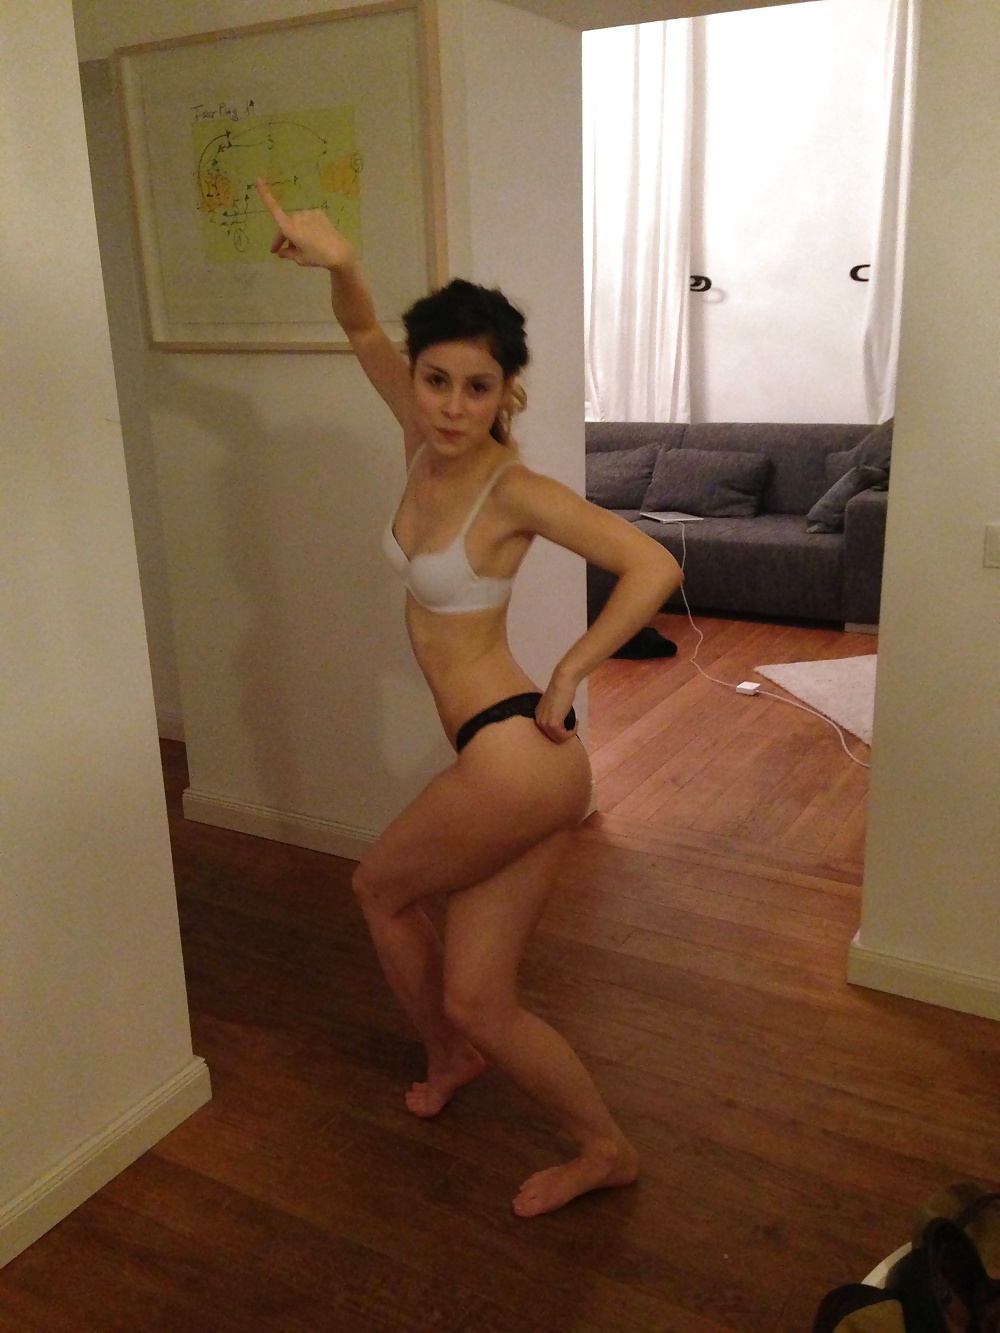 Lena meyer-landrut topless